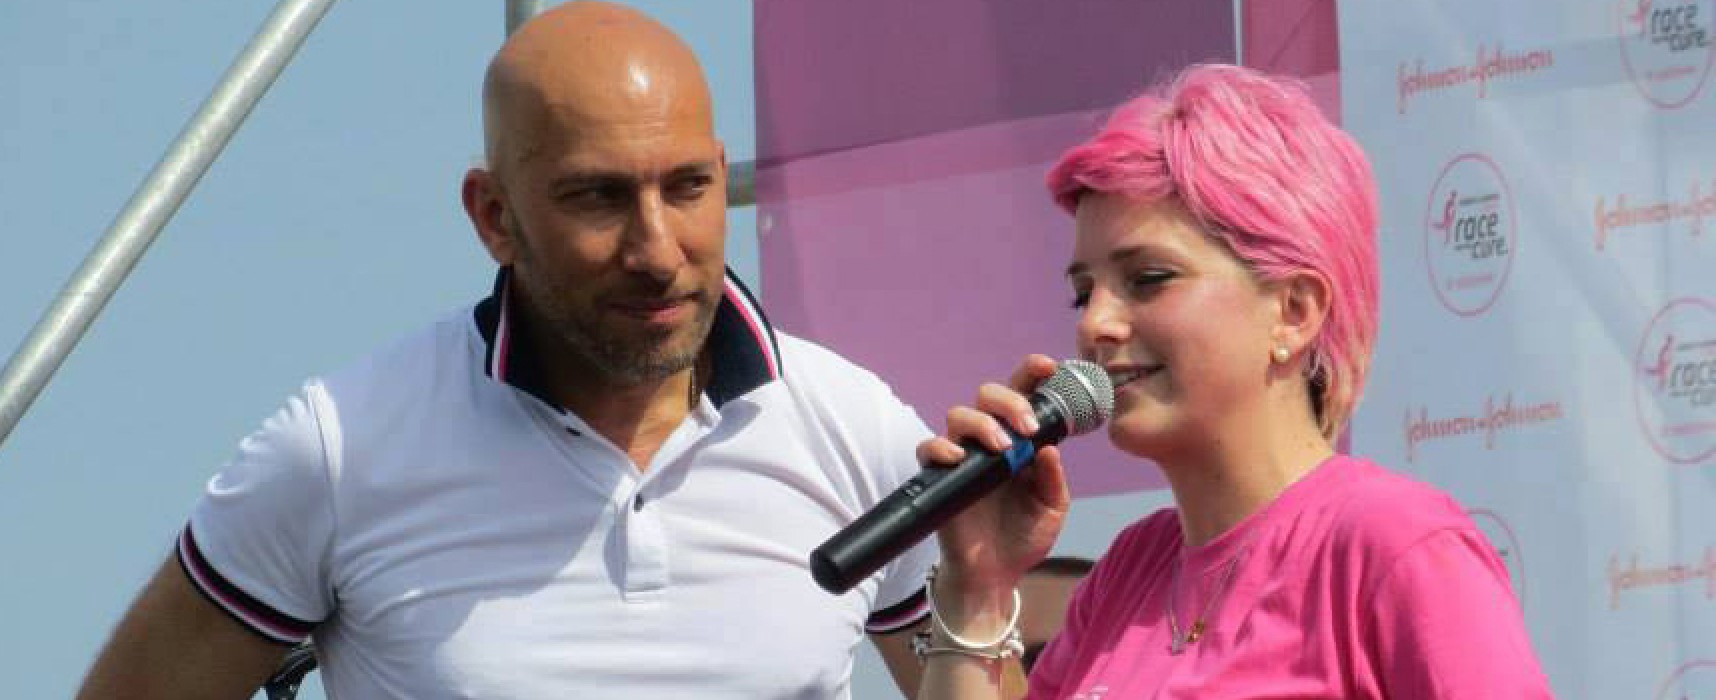 Antonella Dell’Olio sul palco di Race for the cure: “L’anno scorso ero lì con la testa pelata” / FOTO